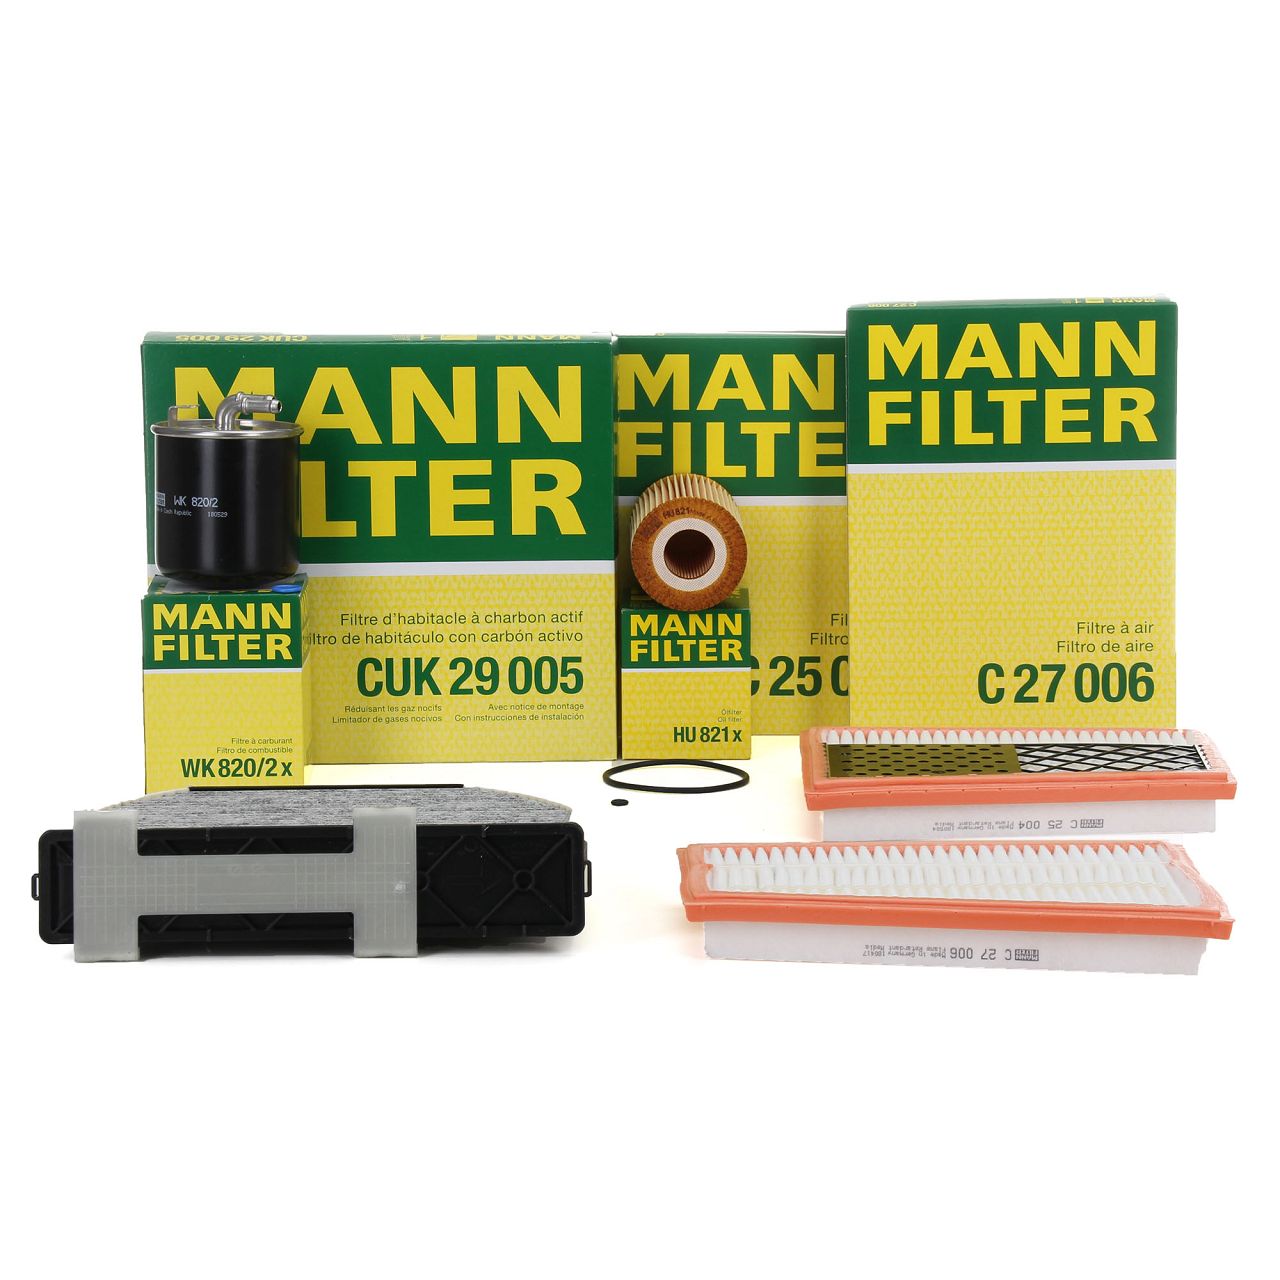 Innenraumluft für Heizung/Lüftung CUK 21 006 MANN-FILTER Filter 